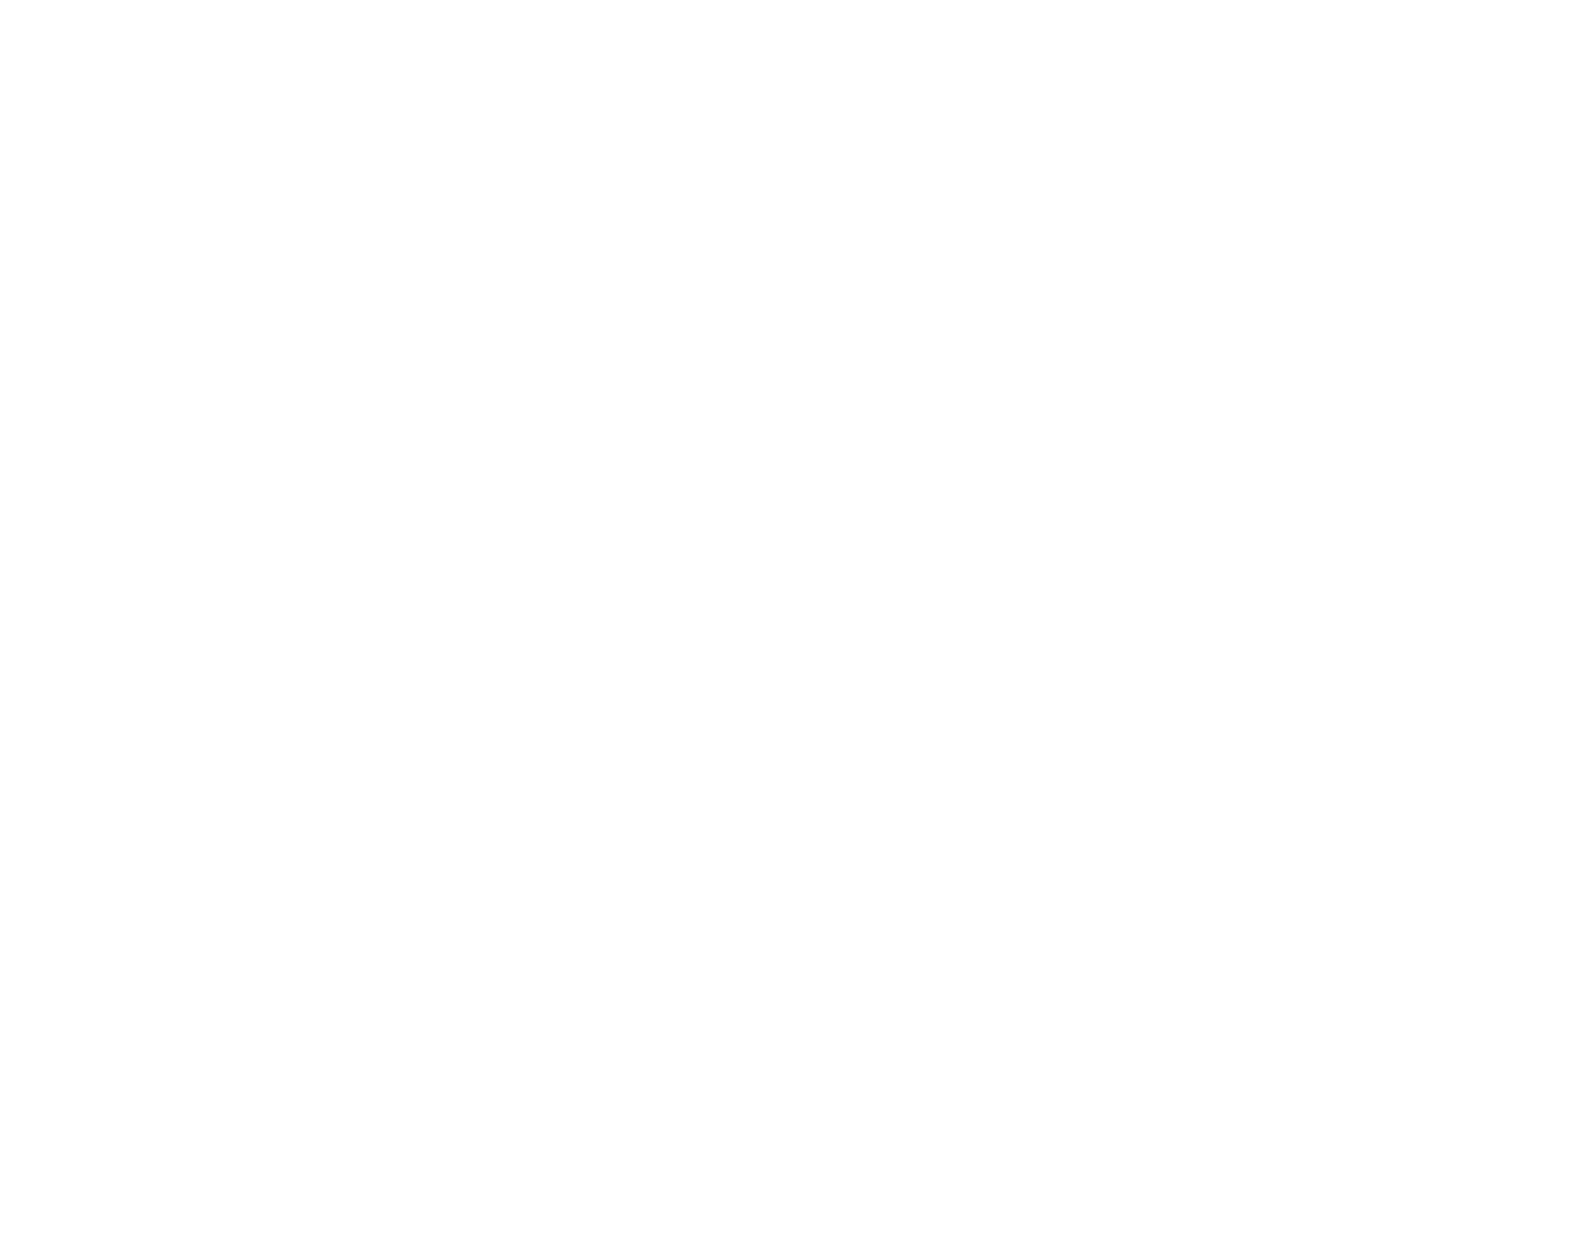 Wipro logo large for dark backgrounds (transparent PNG)